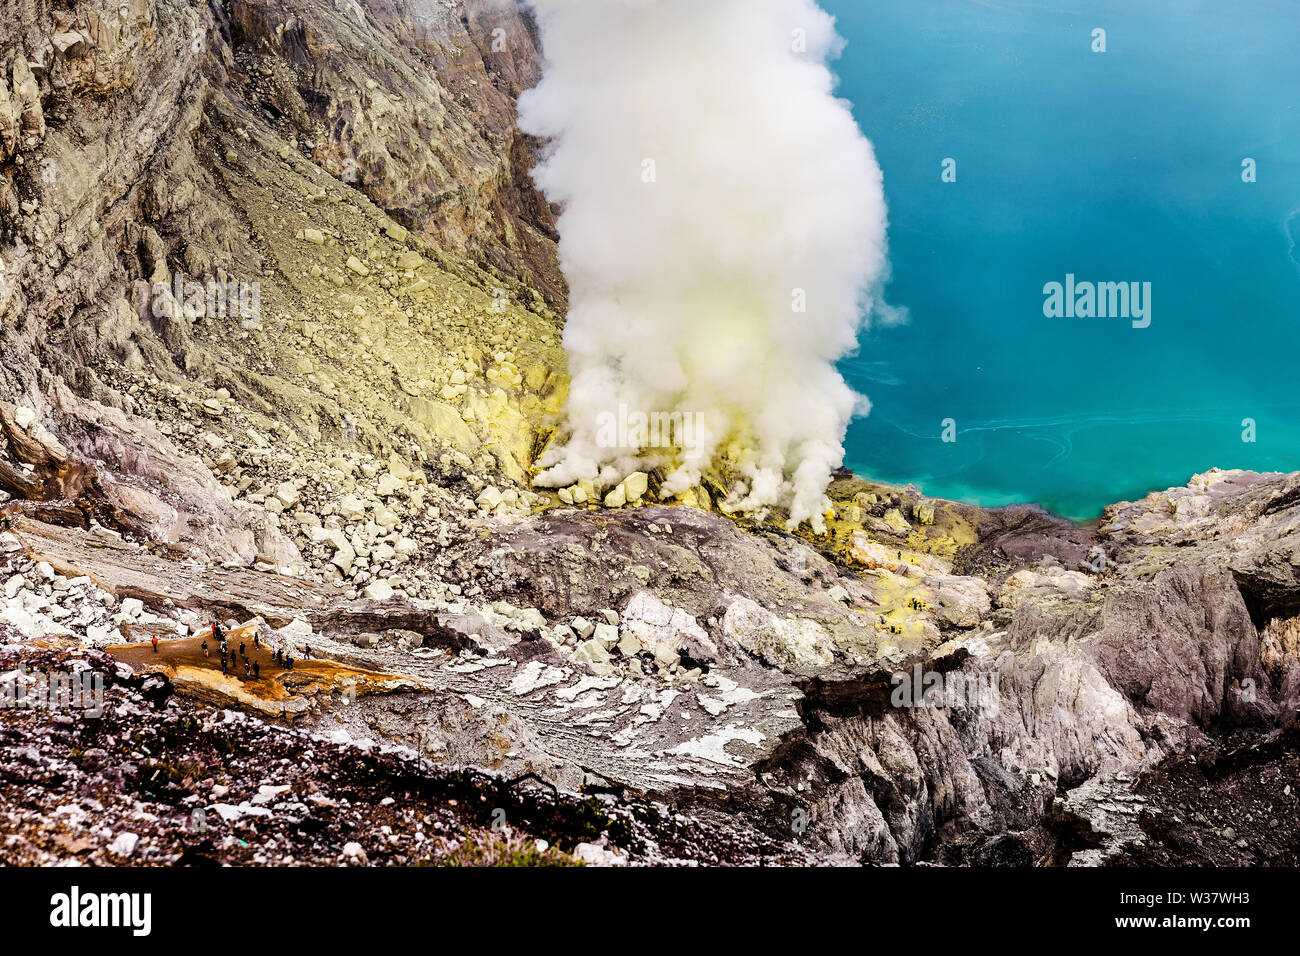 Il cratere di un vulcano con una verde acido solforico lago vulcanico e vulcaniche di fumo. Vista del Vulcano fumatori Kawah Ijen in Indonesia Foto Stock